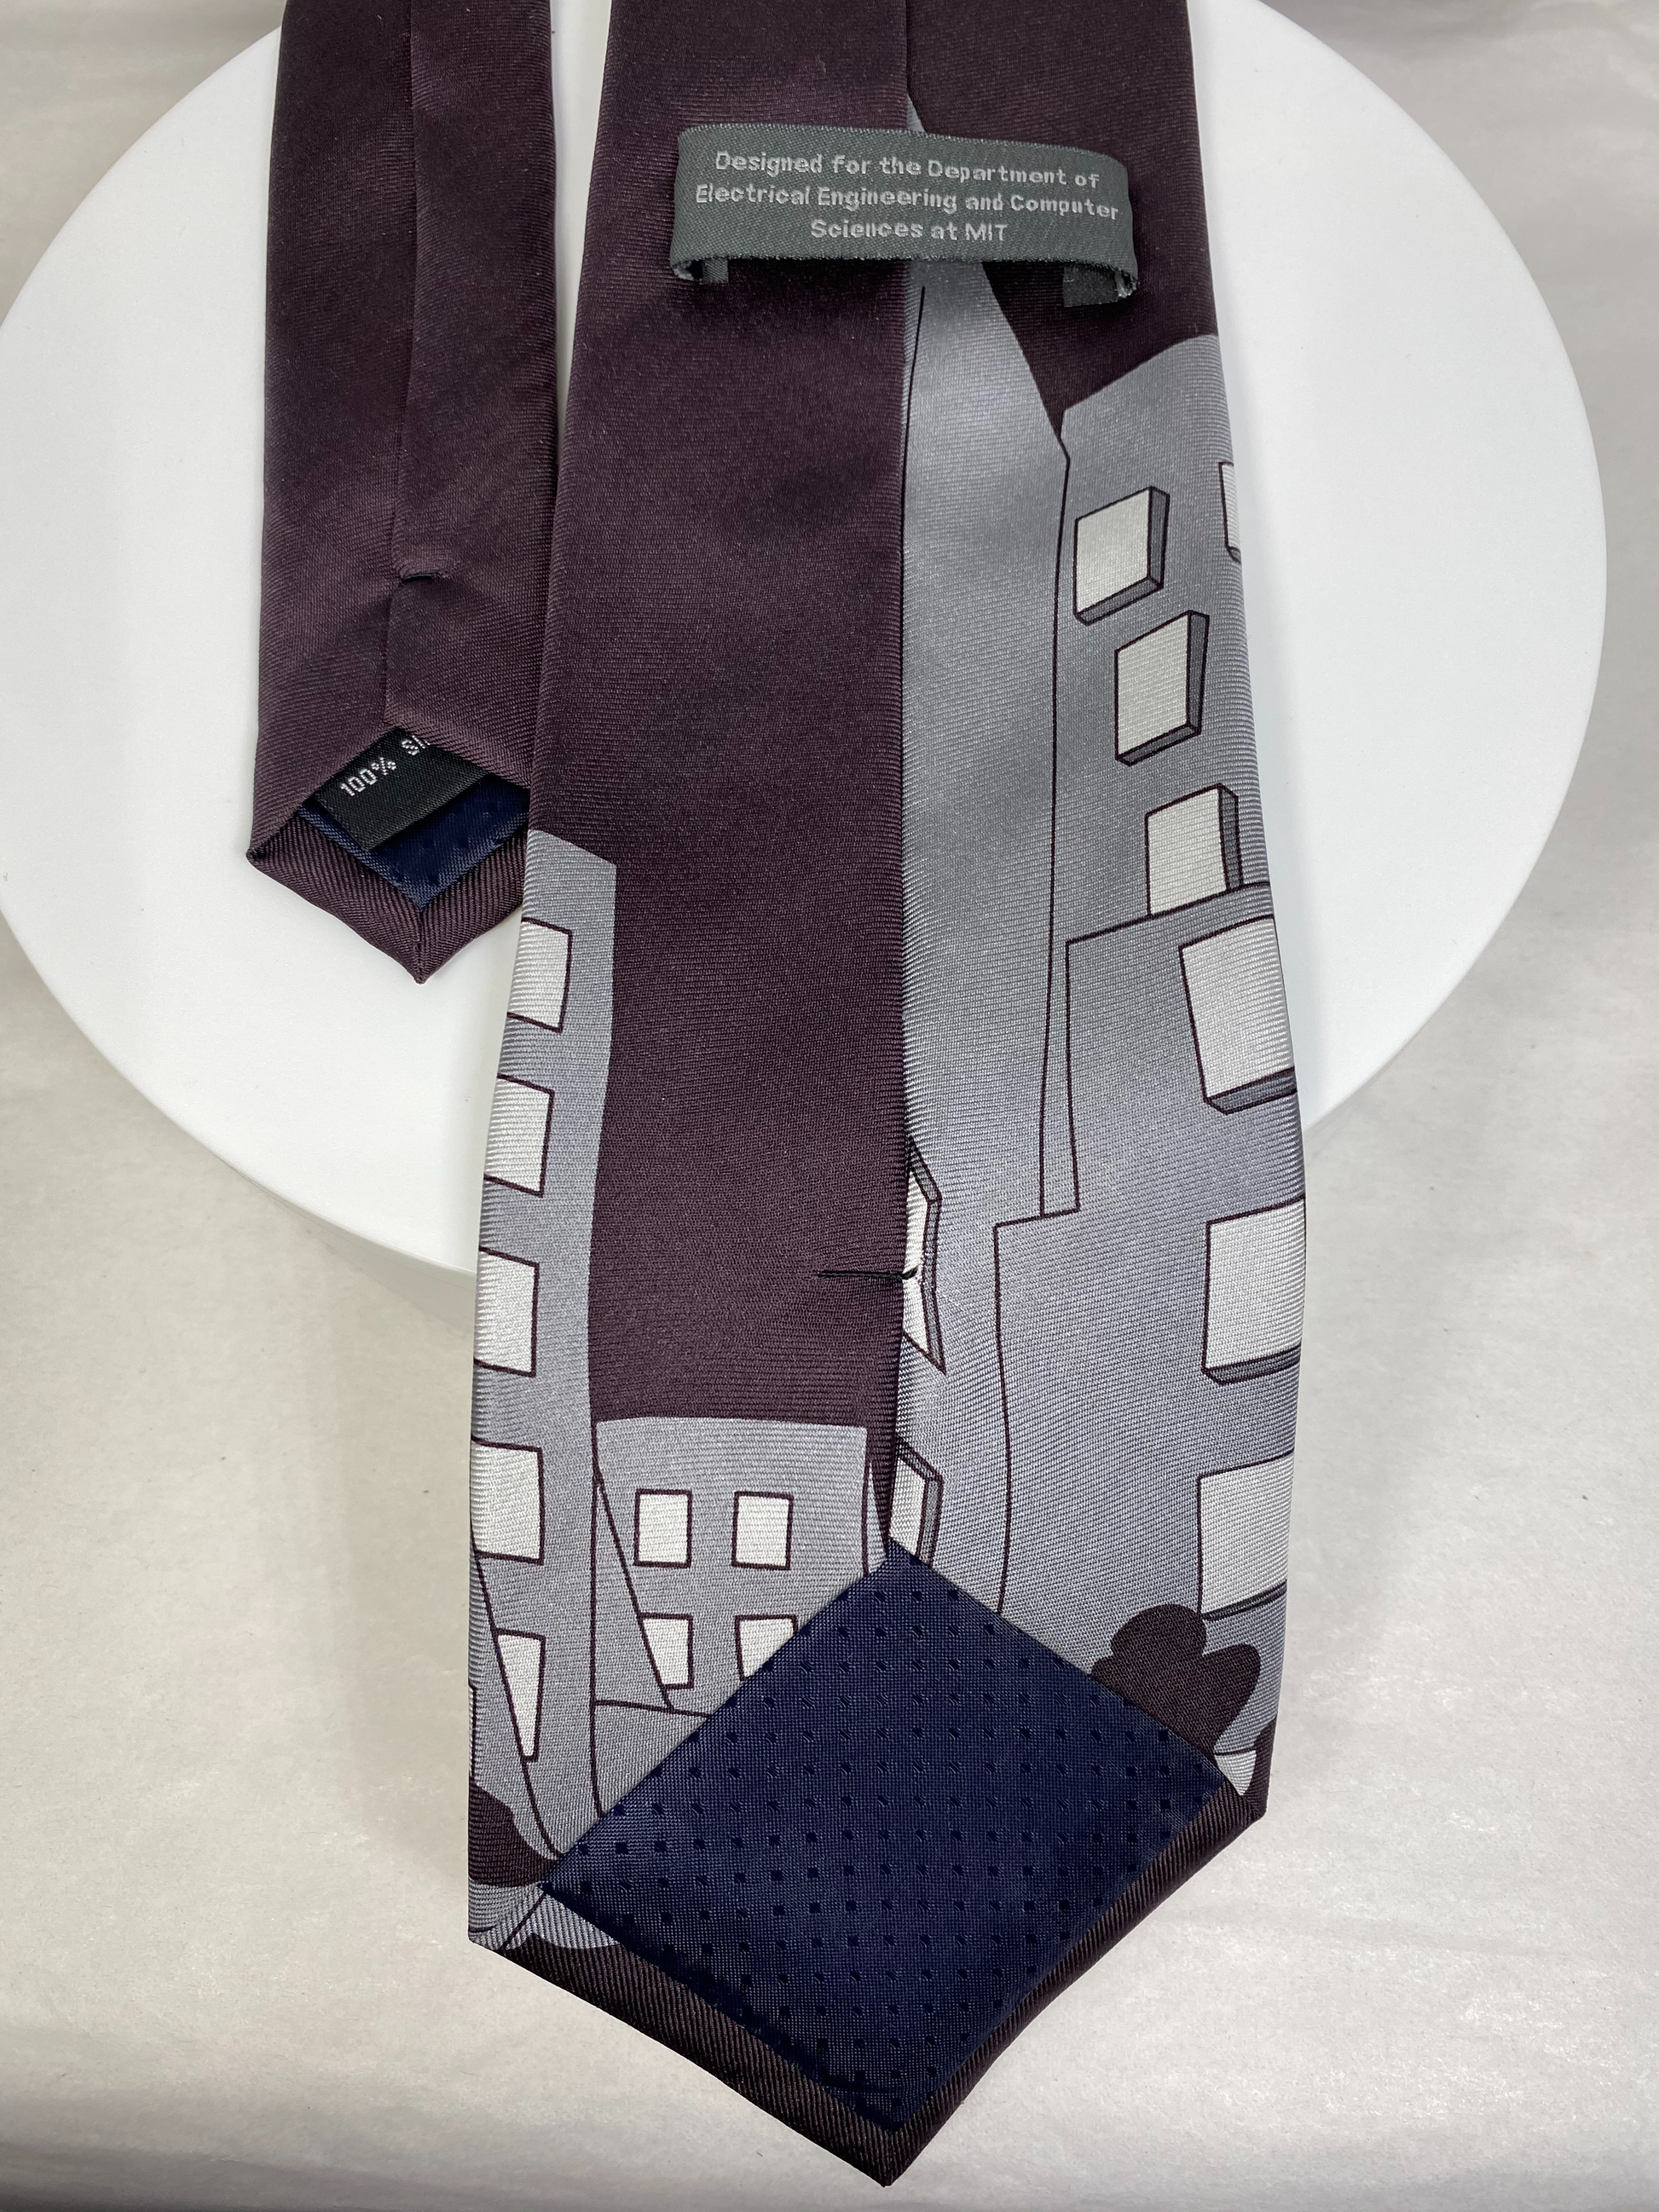 MIT Stata Center Men's Necktie - Duckwells